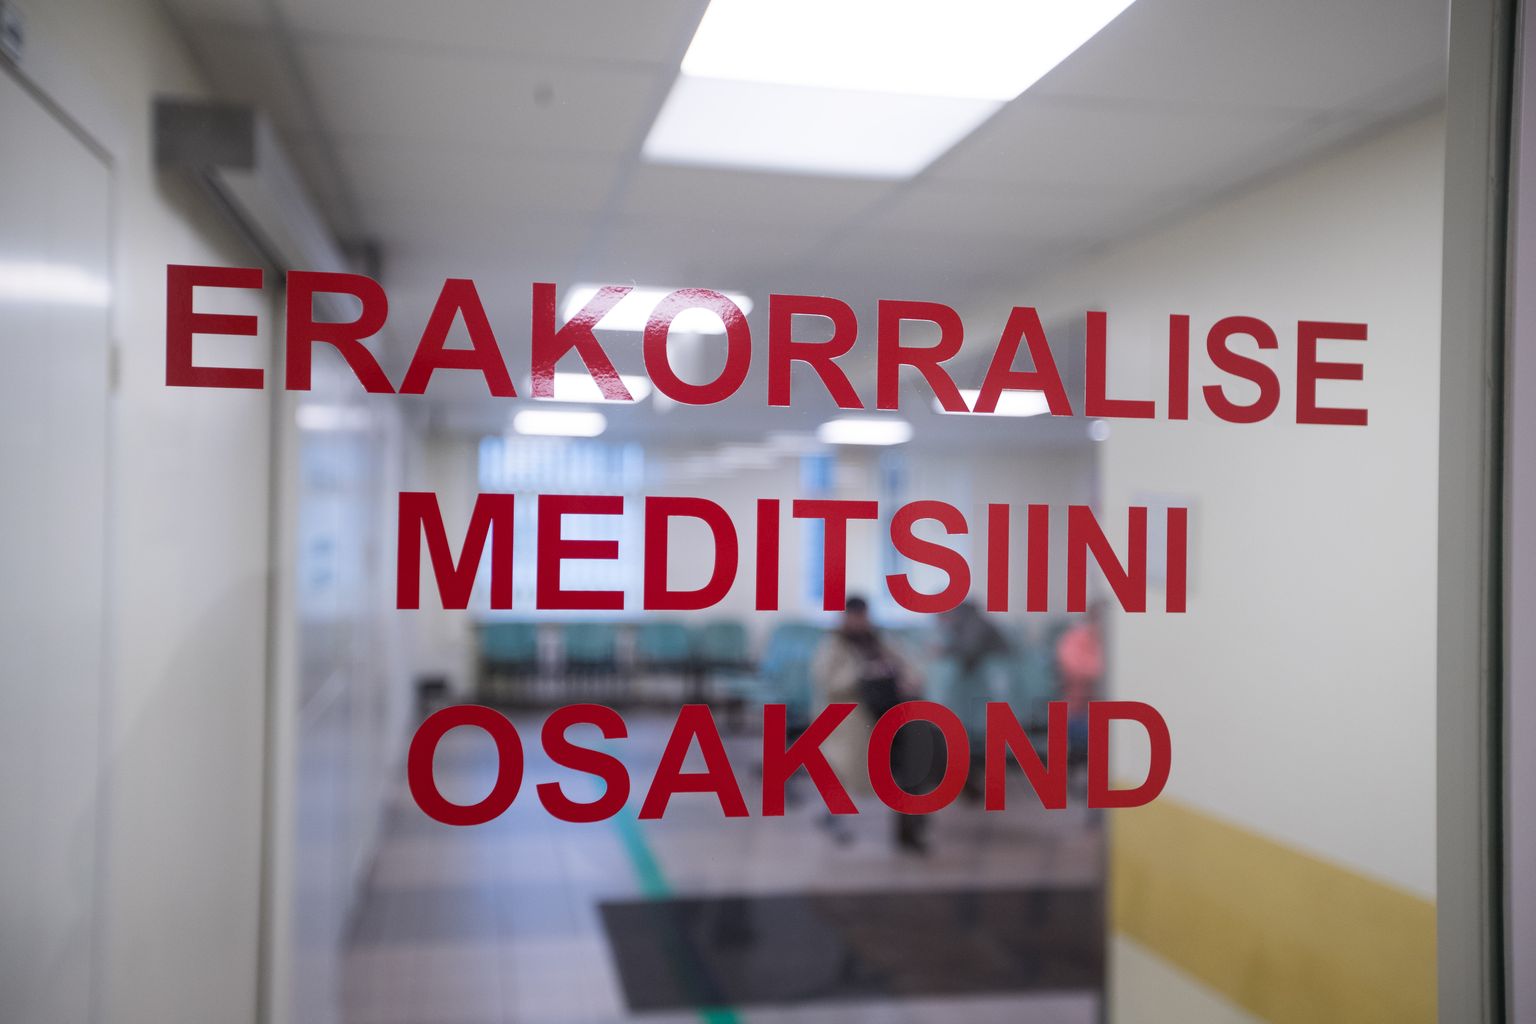 Отделение экстренной медицины Ида-Таллиннской центральной больницы.